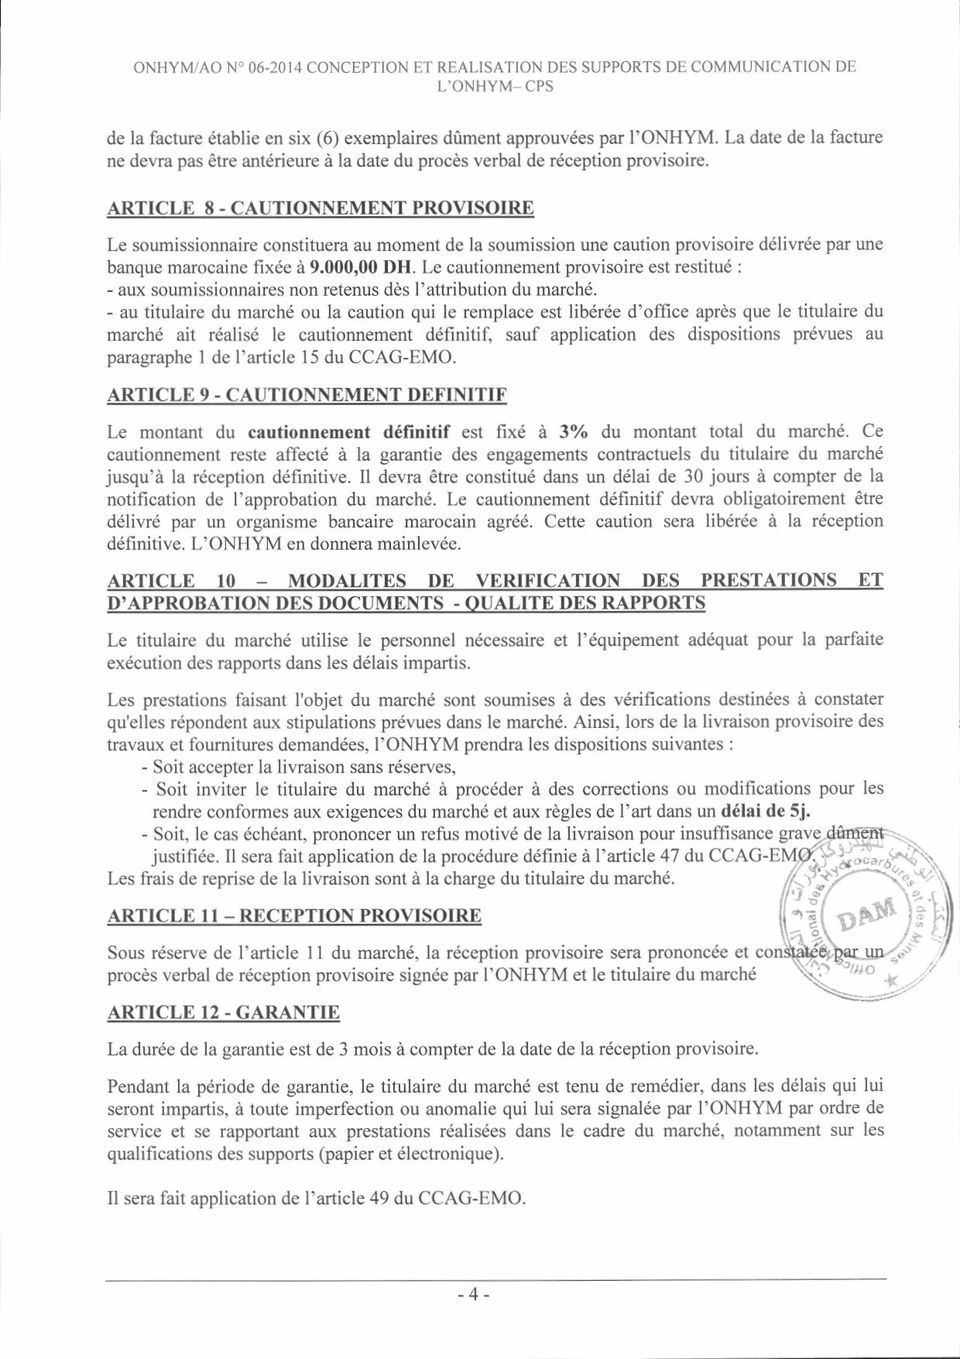 ARTICLE 8 - CAUTIONNEMENT PROVISOIR"E Le soumissionnaire constituera au moment de la soumission une caution provisoire déliwée pat une banque marocaine fixée à 9.000,00 DH.